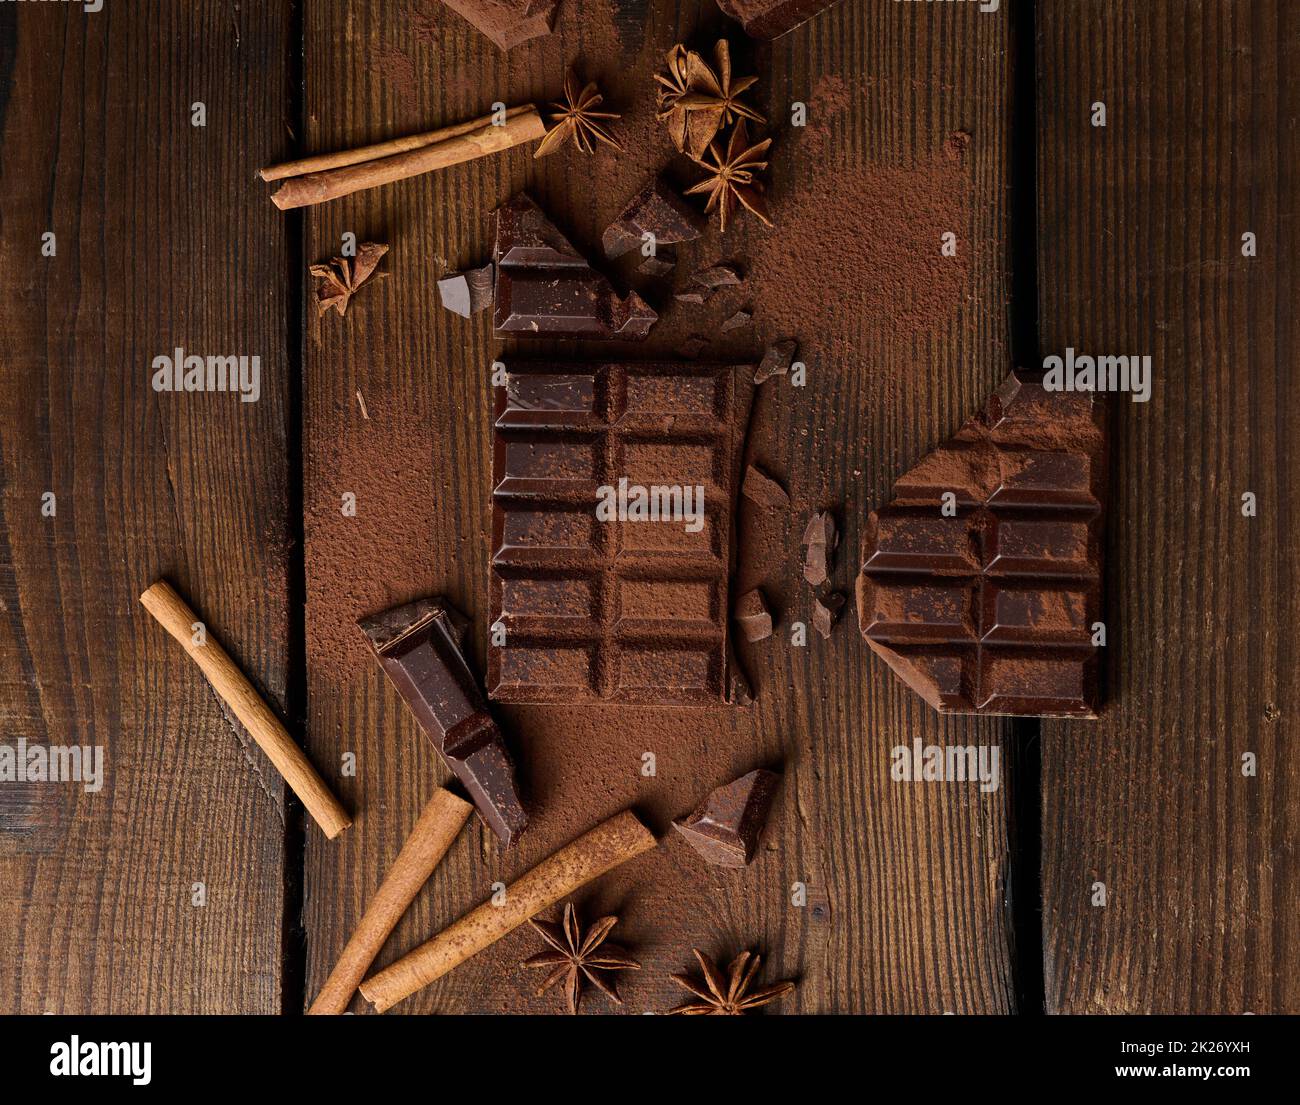 morceaux de chocolat noir cassés, bâtonnets de cannelle et anis étoilé sur une table en bois marron, vue du dessus Banque D'Images